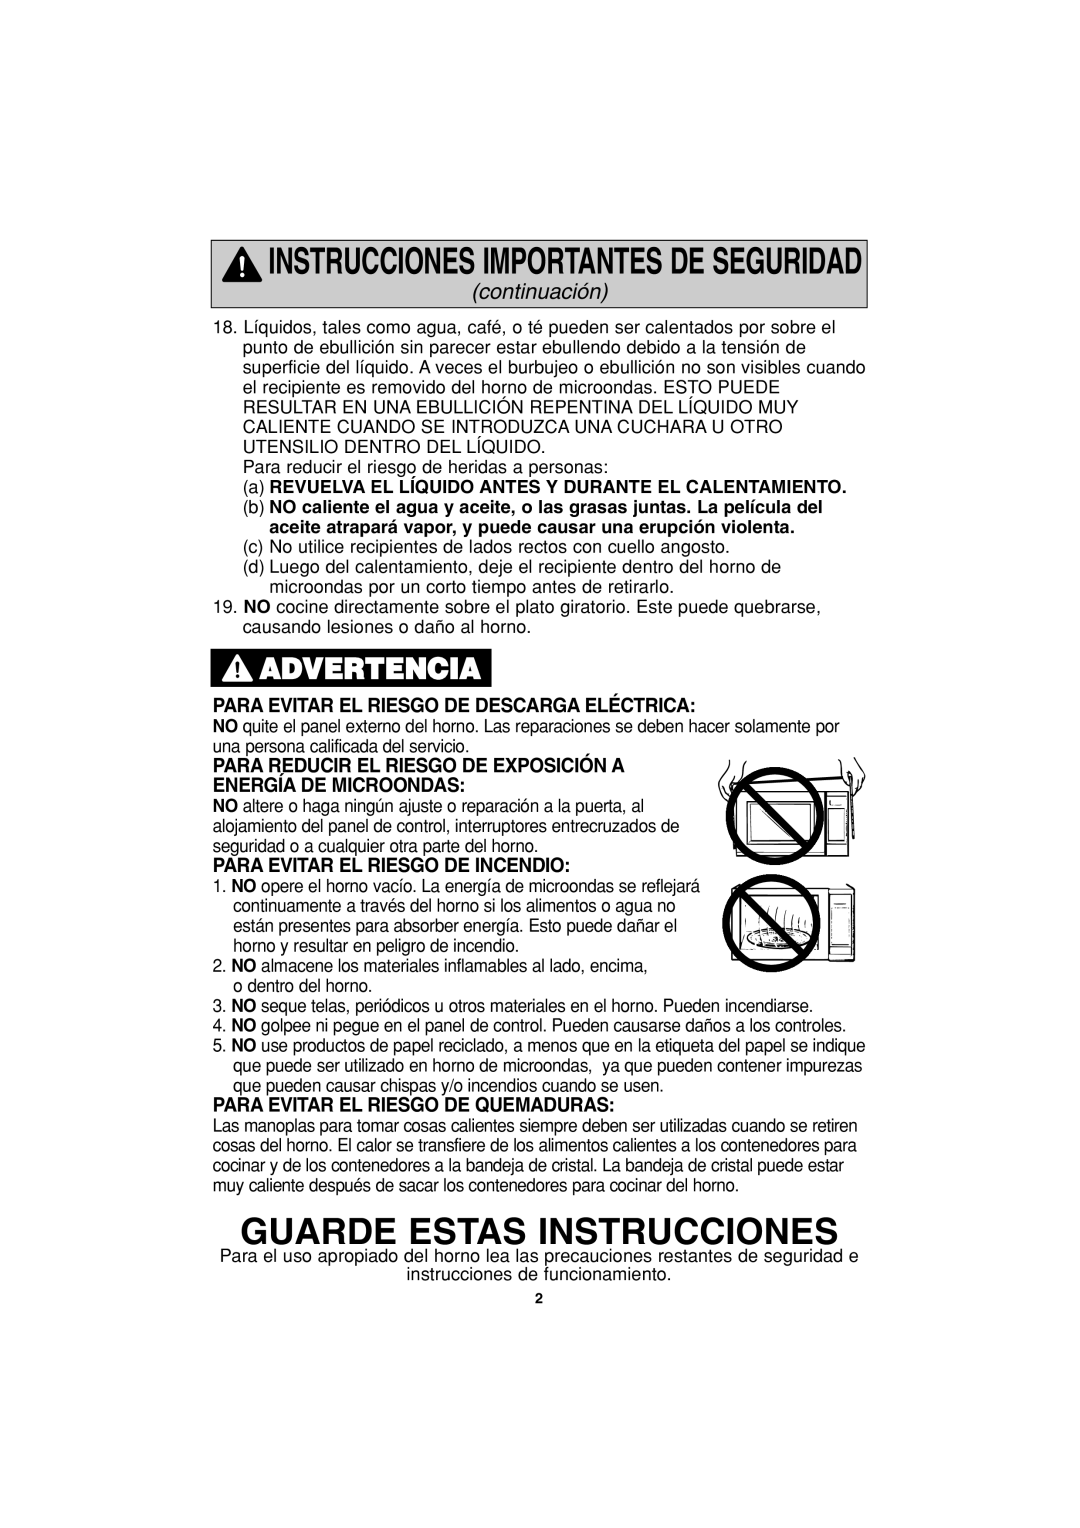 Panasonic NN-S443 Guarde Estas Instrucciones, Advertencia, continuación, Para Evitar El Riesgo De Descarga Eléctrica 